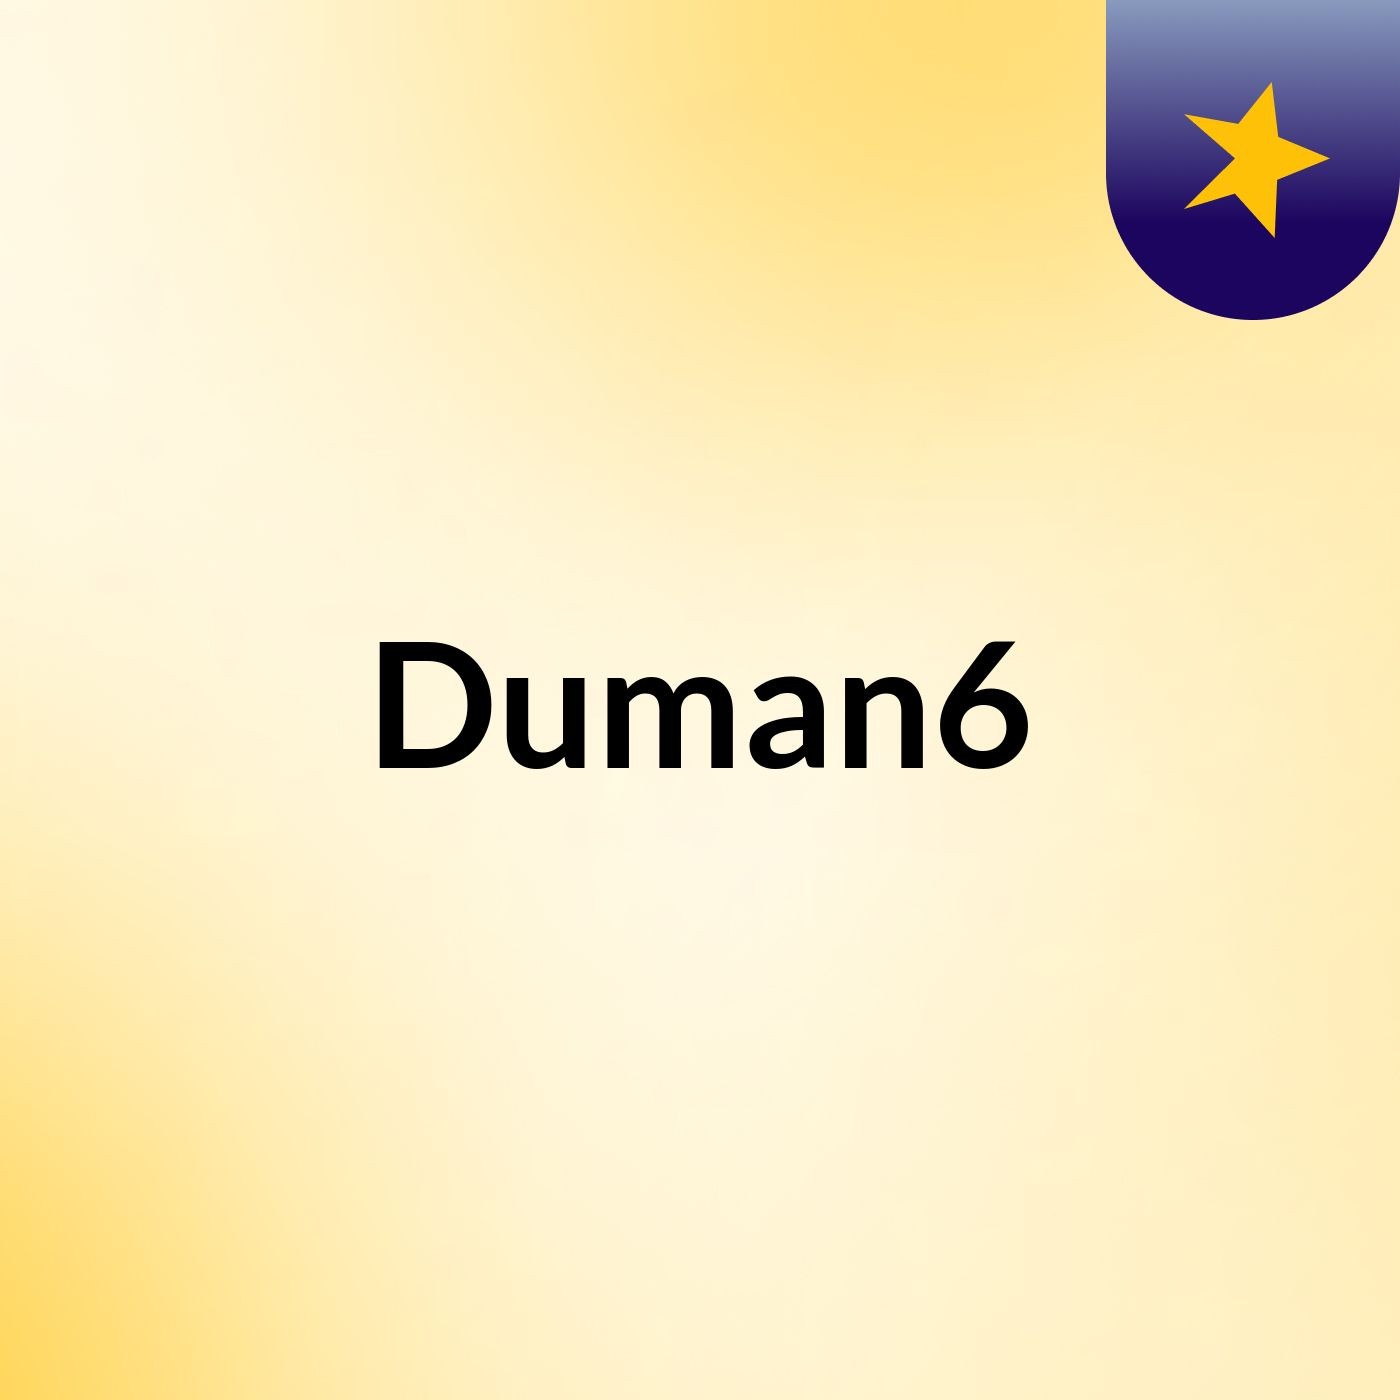 Duman6